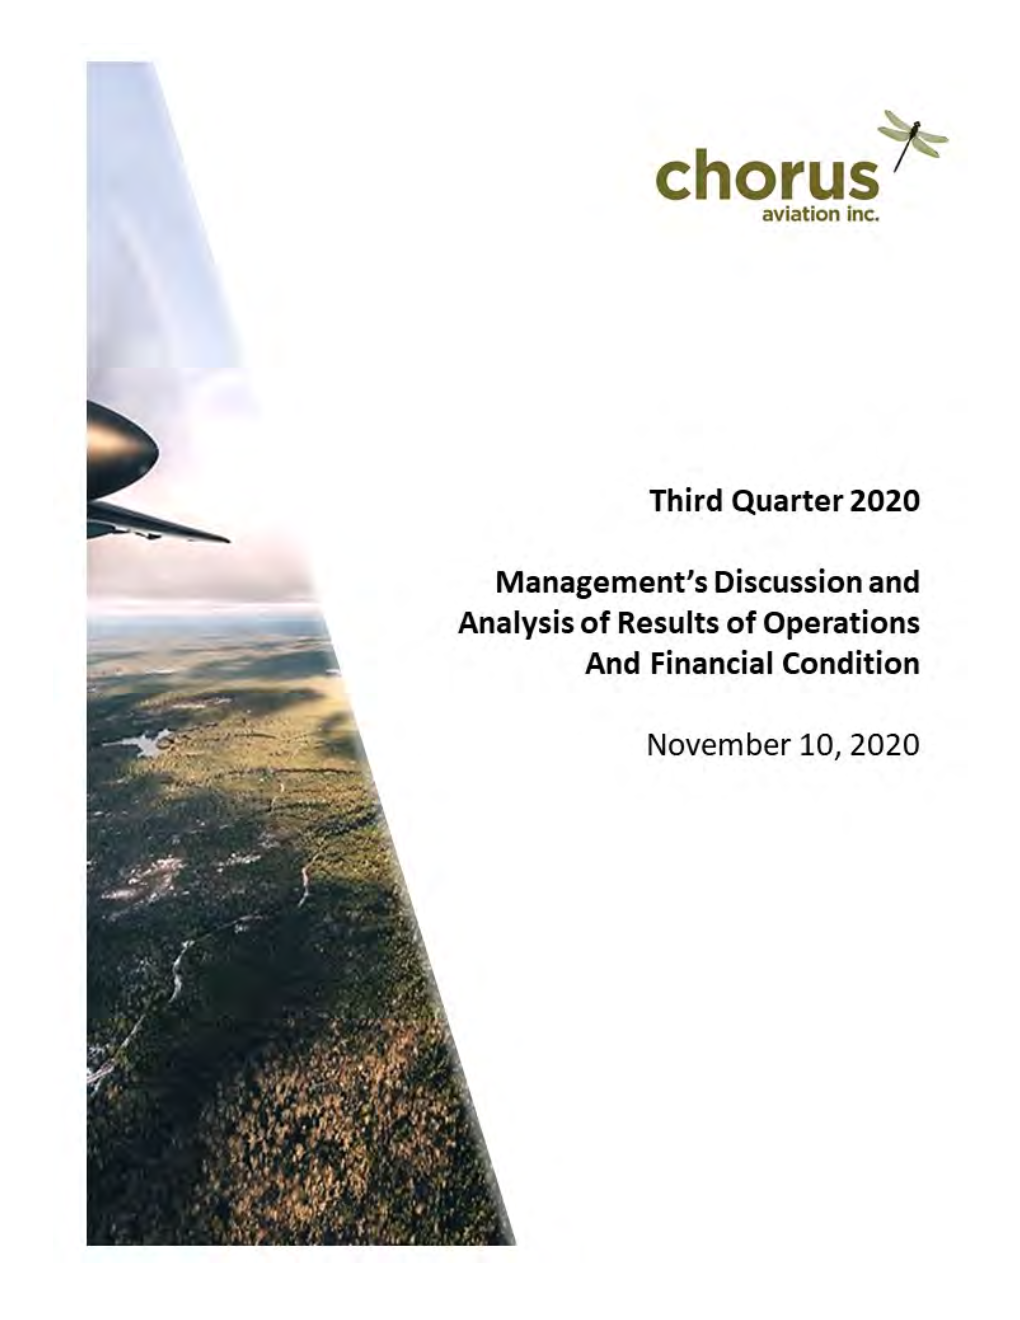 2020 Q3 Chorus MD&A